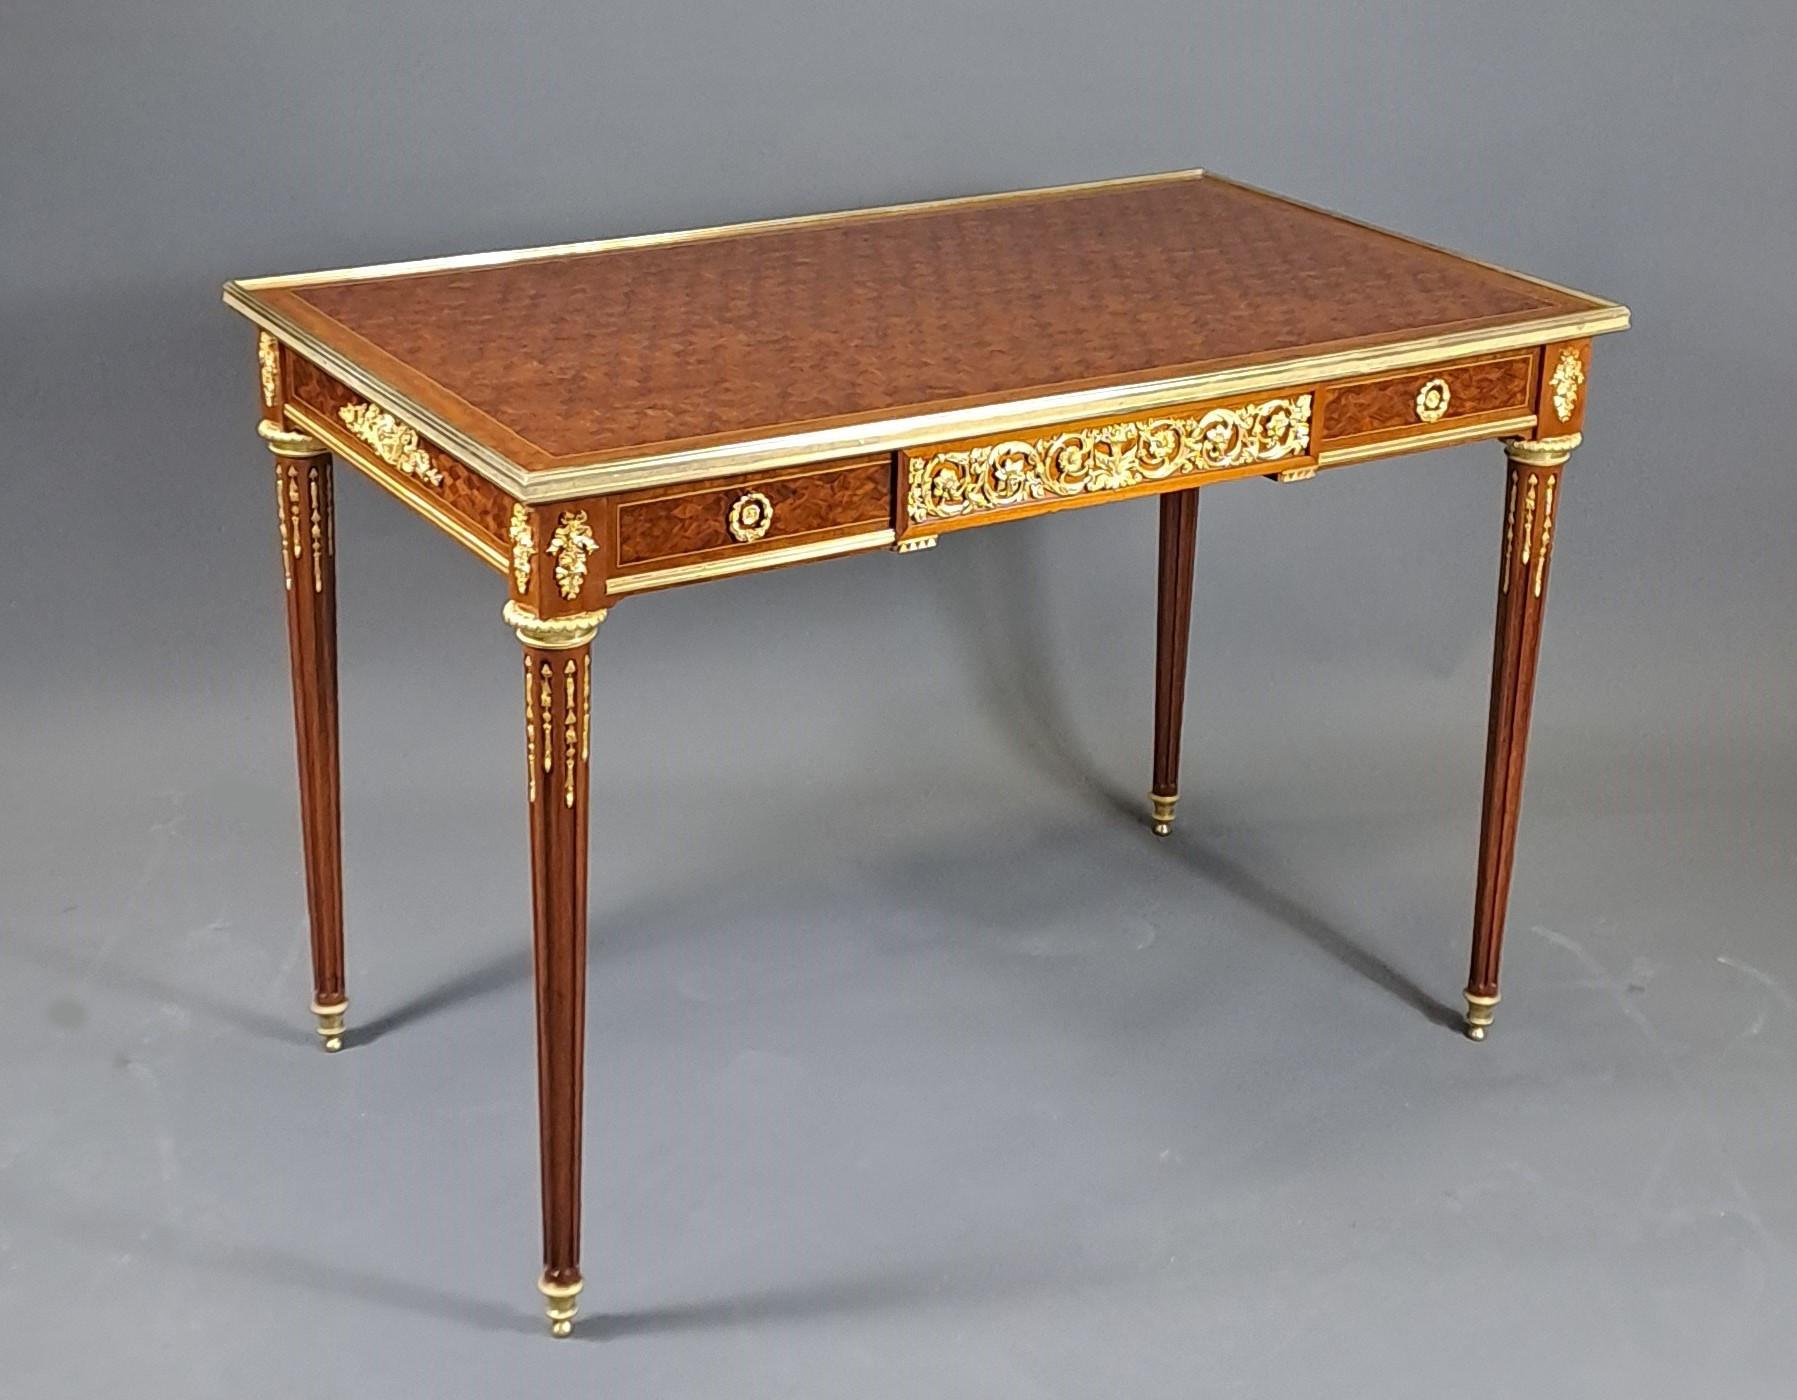 Prächtiger Mitteltisch im Louis XVI-Stil aus Mahagoni und Rosenholzeinlegearbeiten.

Hervorragende Verzierung aus sehr fein ziselierter, vergoldeter Bronze.

Öffnen einer großen Schublade.

Pariser Arbeit aus der zweiten Hälfte des 19. Jahrhunderts,